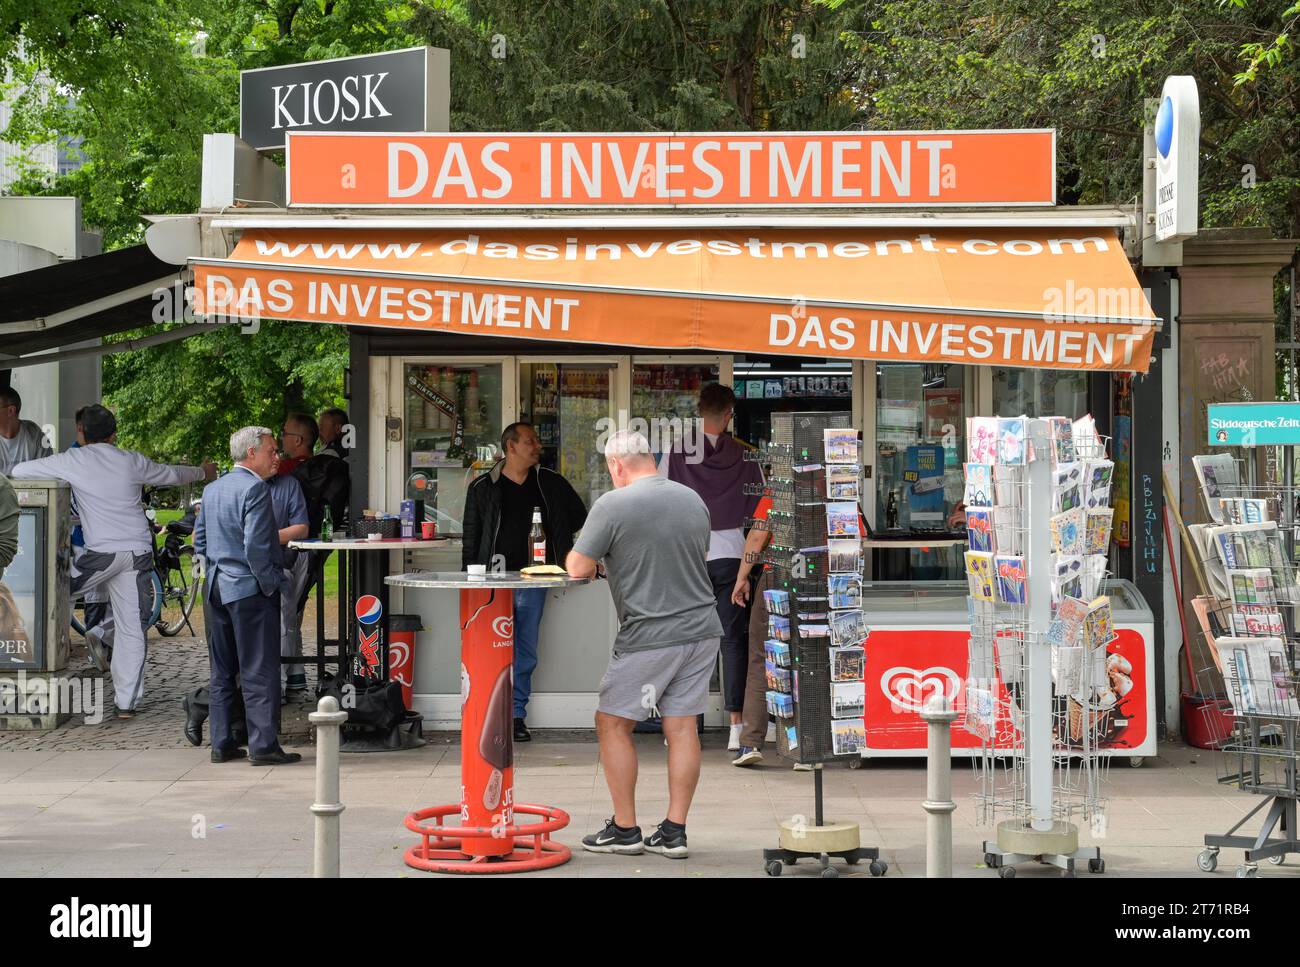 Büdchen, Kiosk, Eckkneipe, Das Investment, Kaiserstraße, Gallusanlage, Frankfurt, Hessen, Deutschland Stock Photo